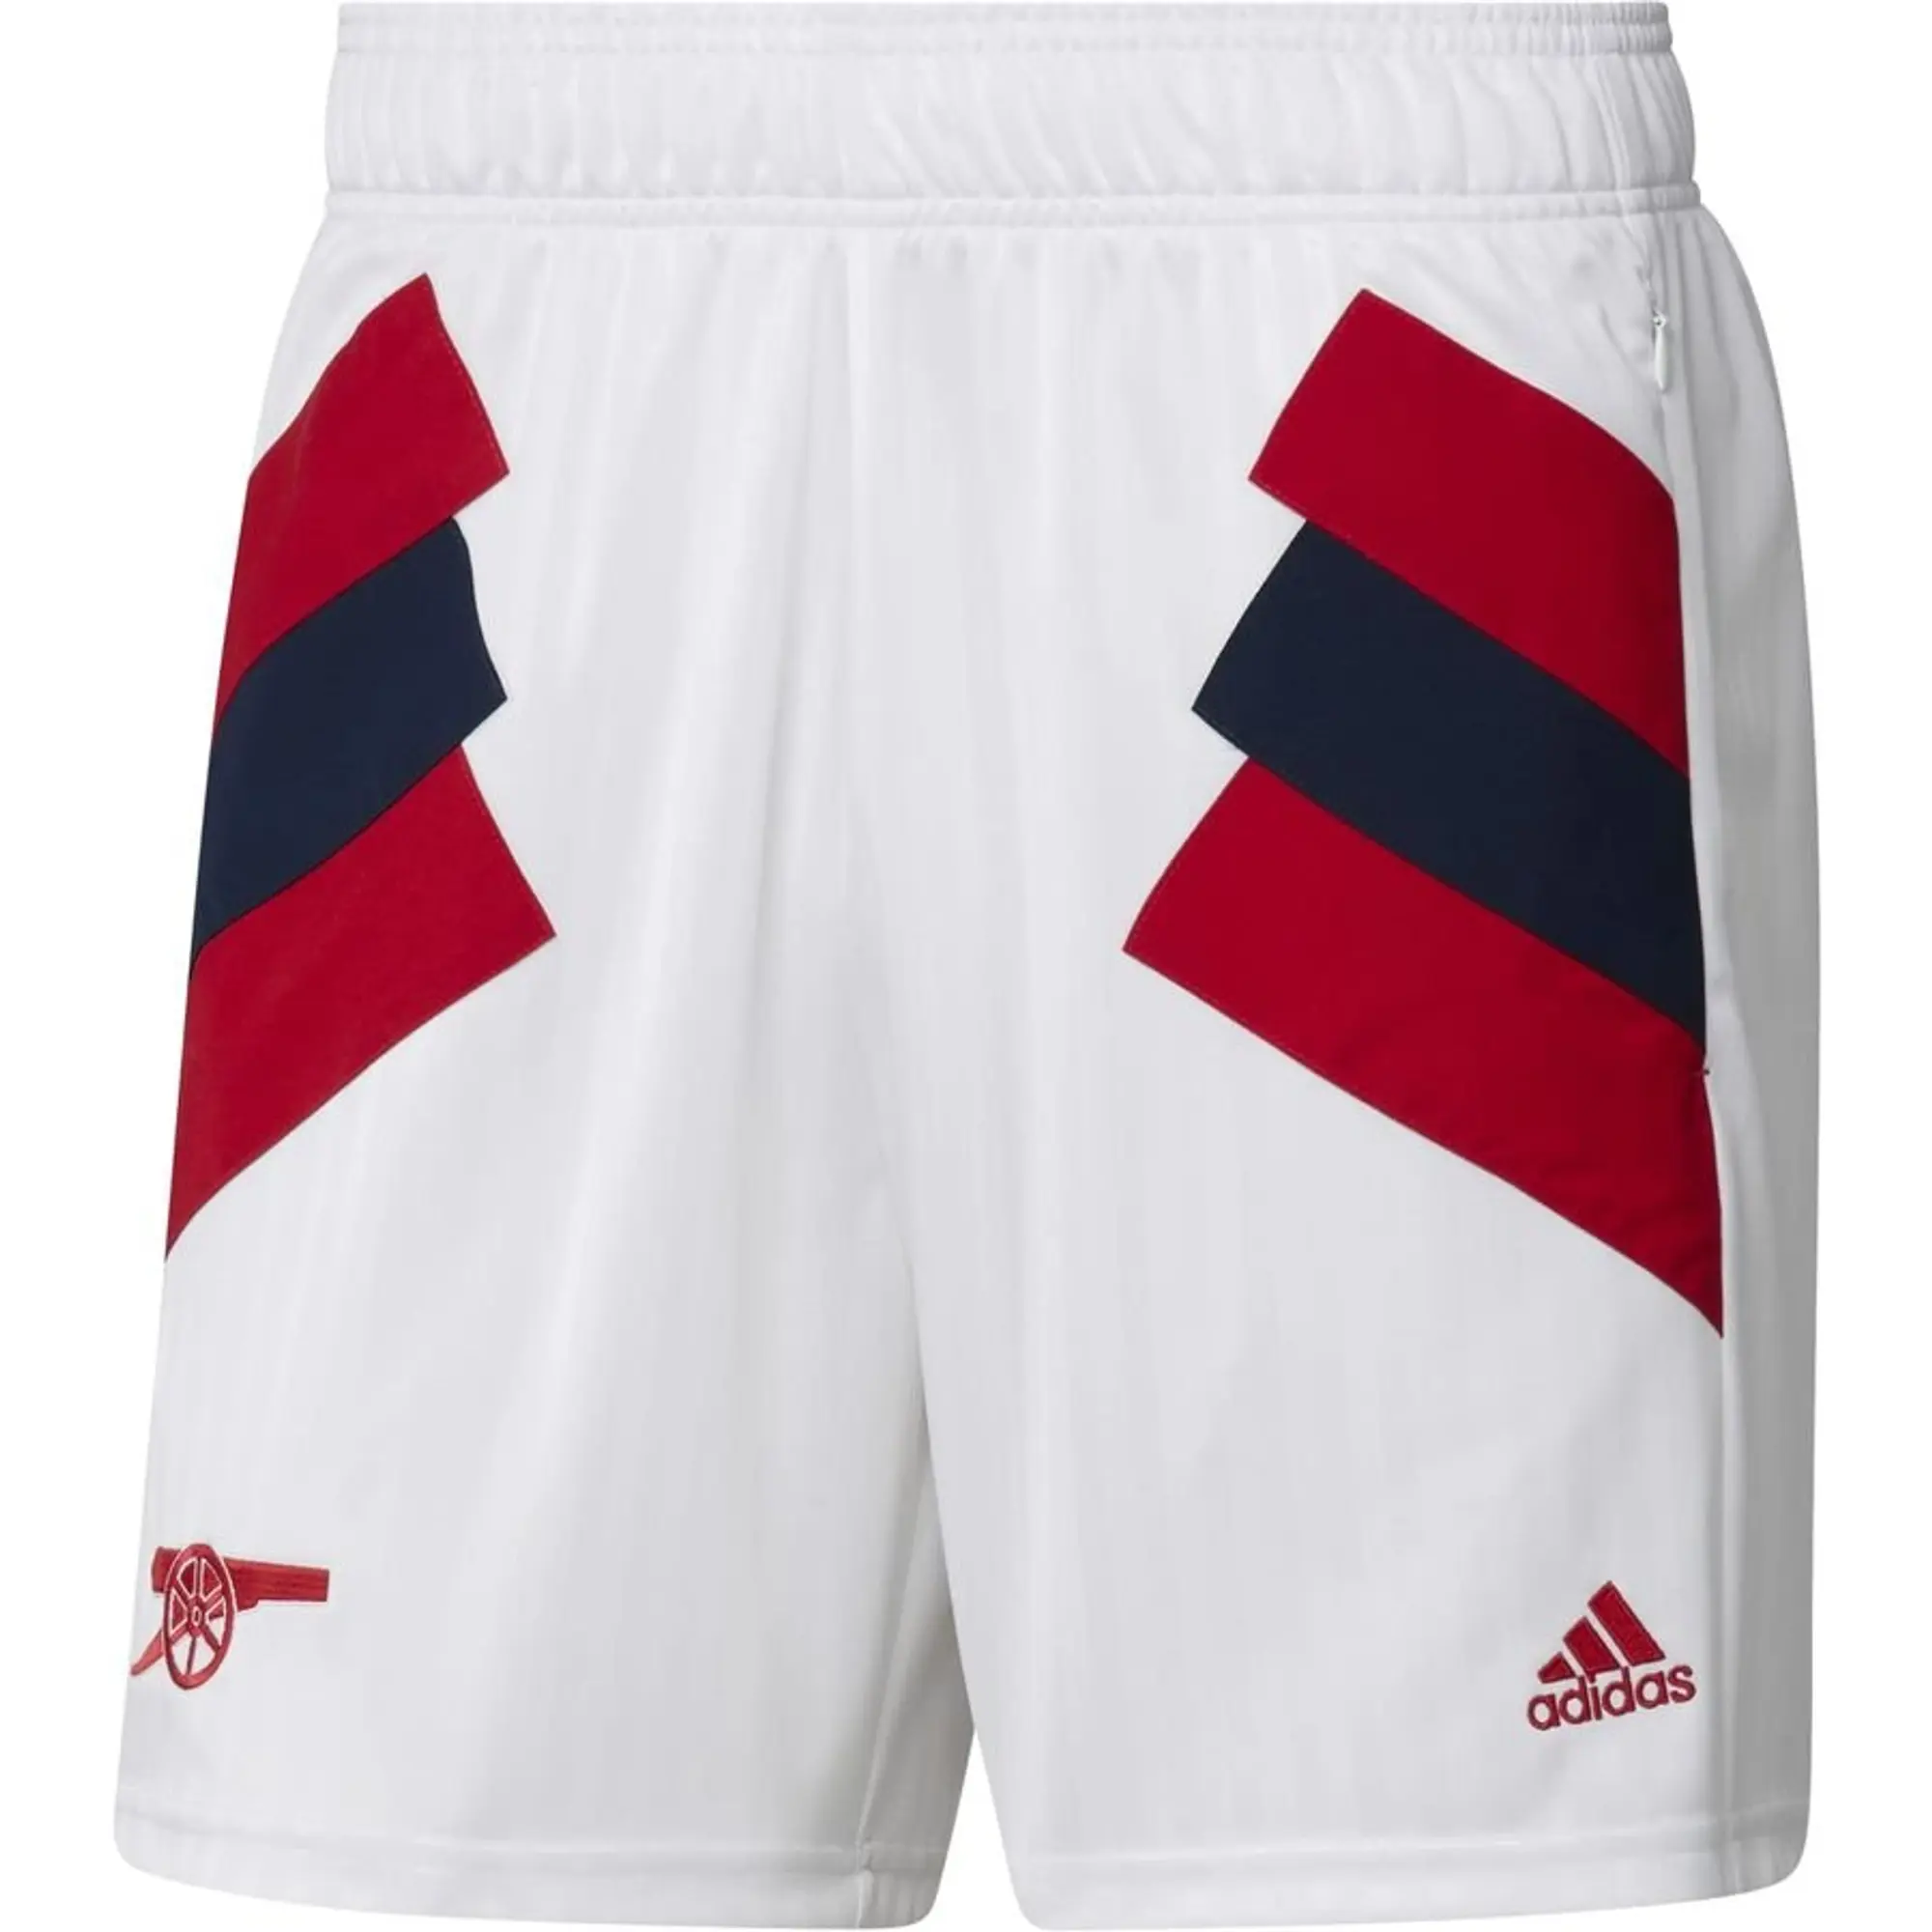 adidas Arsenal Shorts Icon - White/Red/Collegiate Navy - White